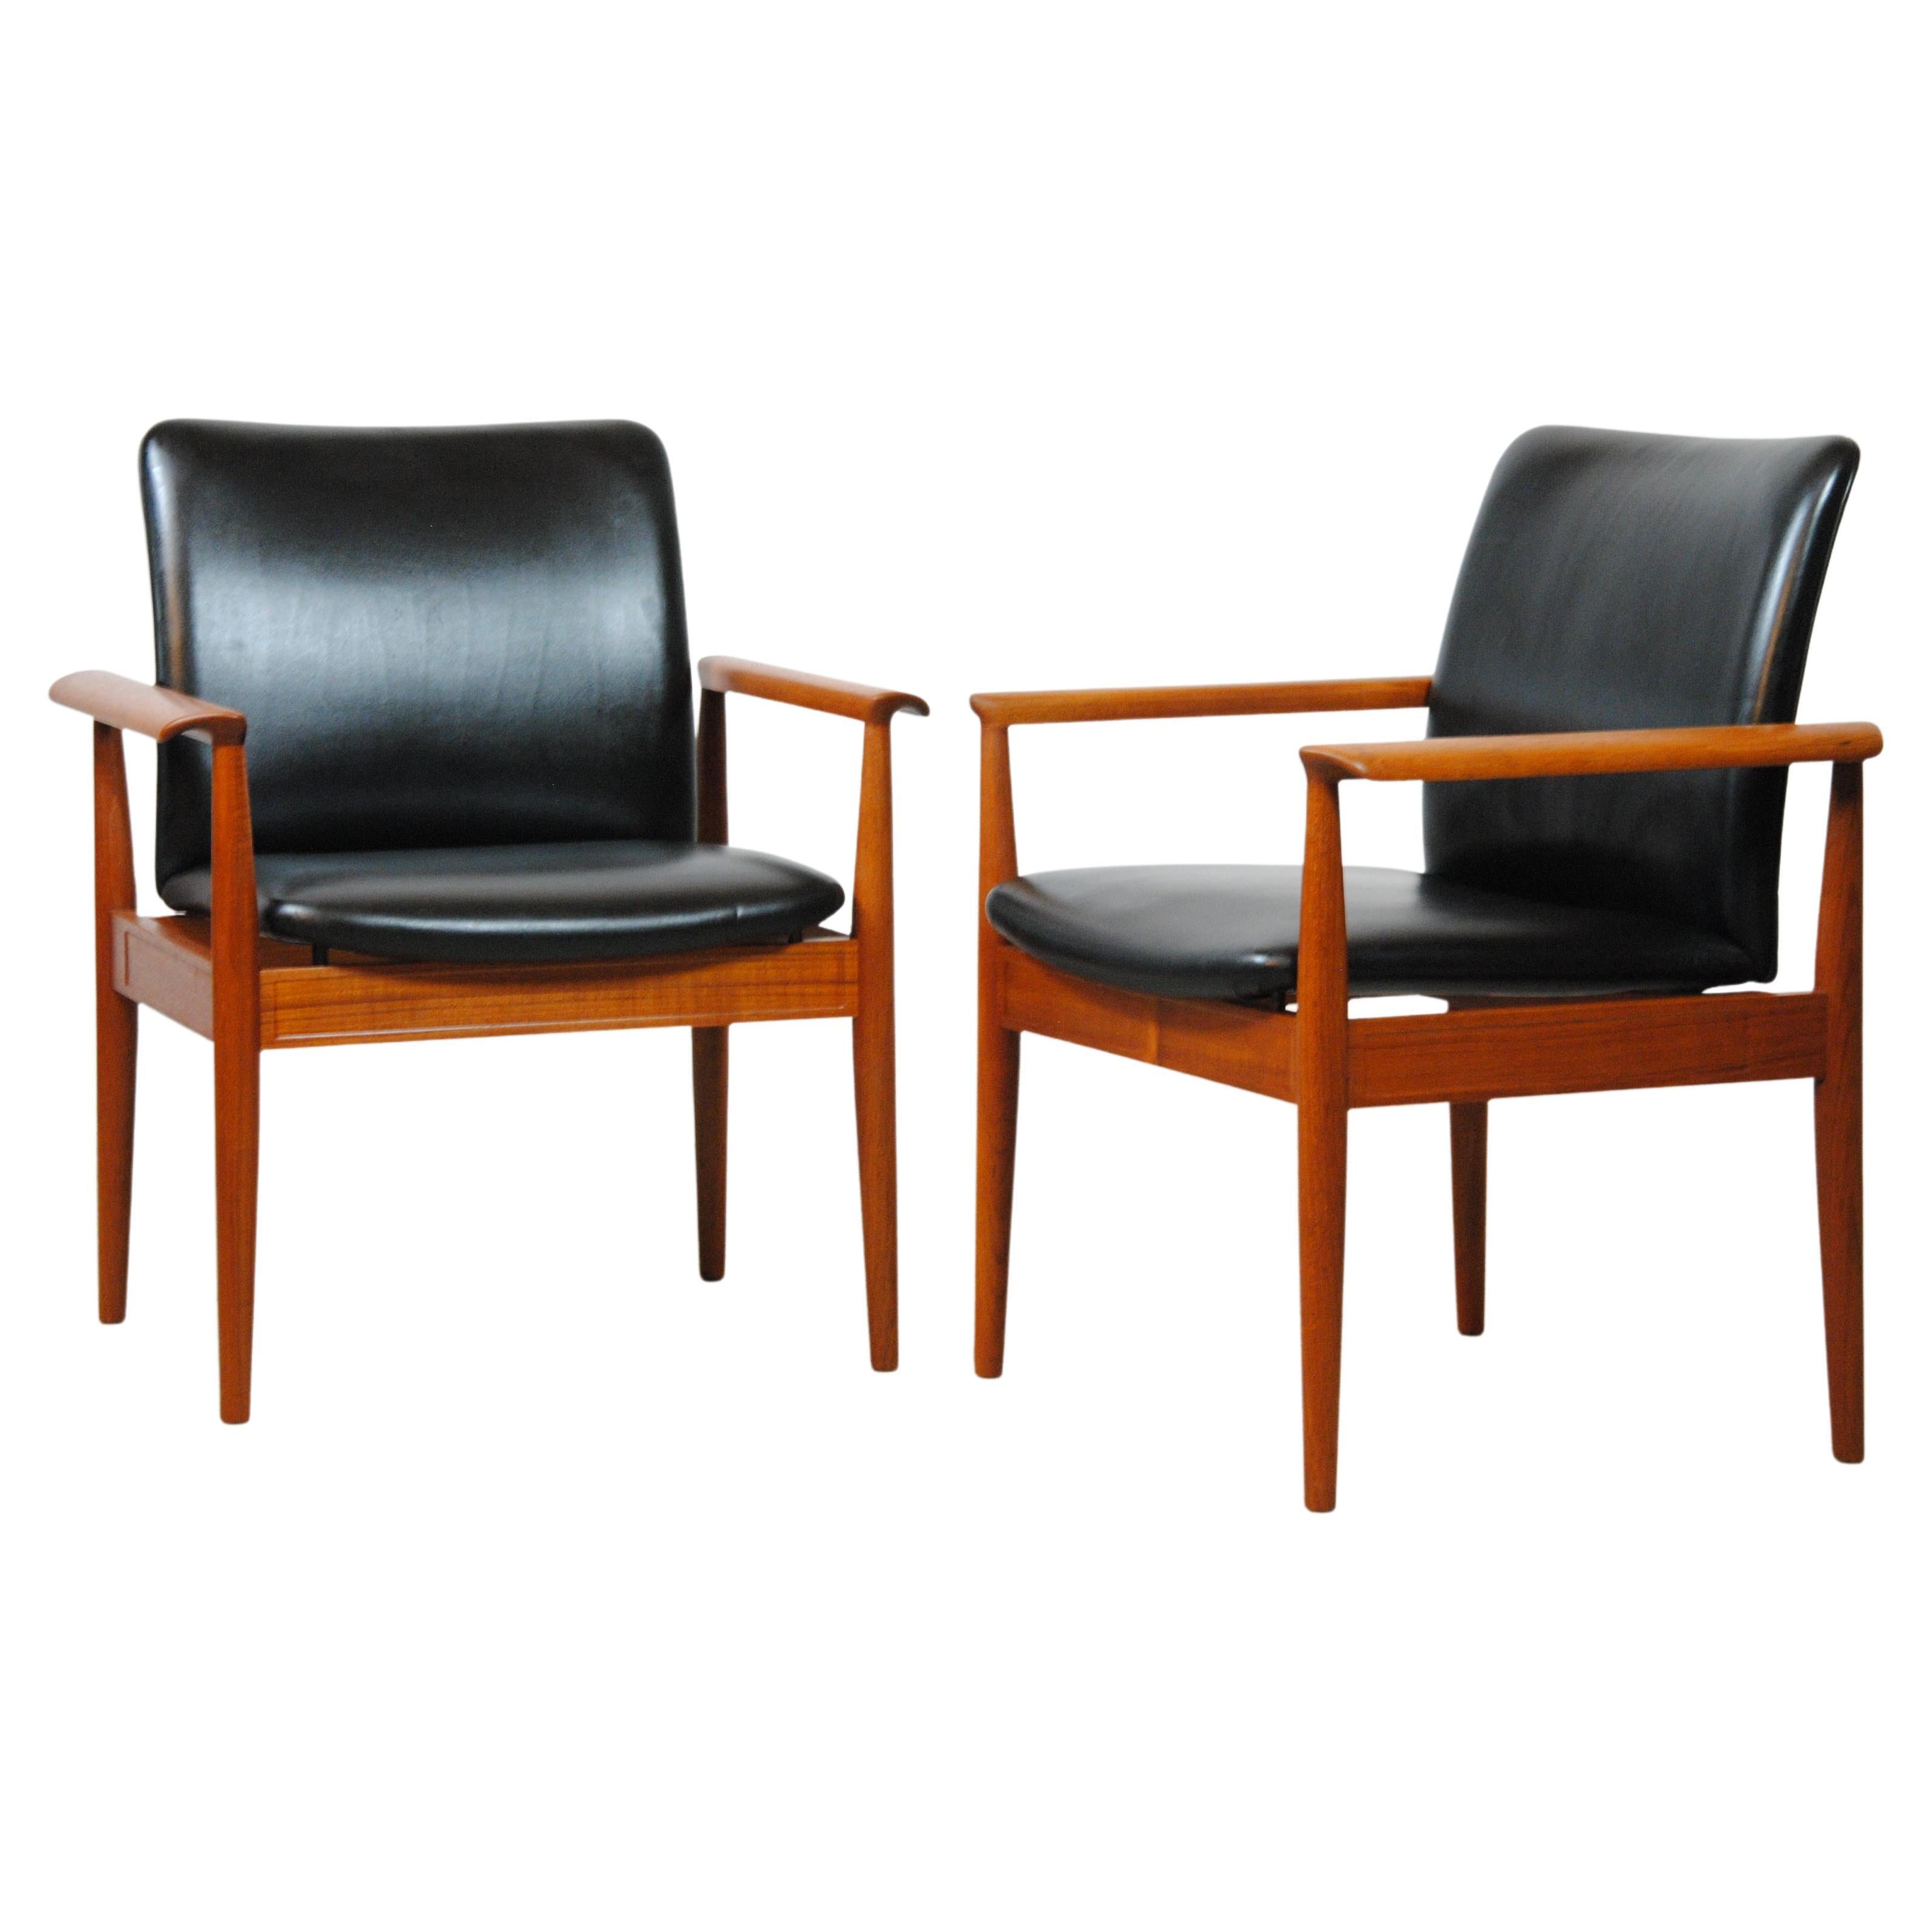 Ensemble de deux fauteuils Finn Juhl des années 1960 entièrement restaurés en teck et cuir par Cado